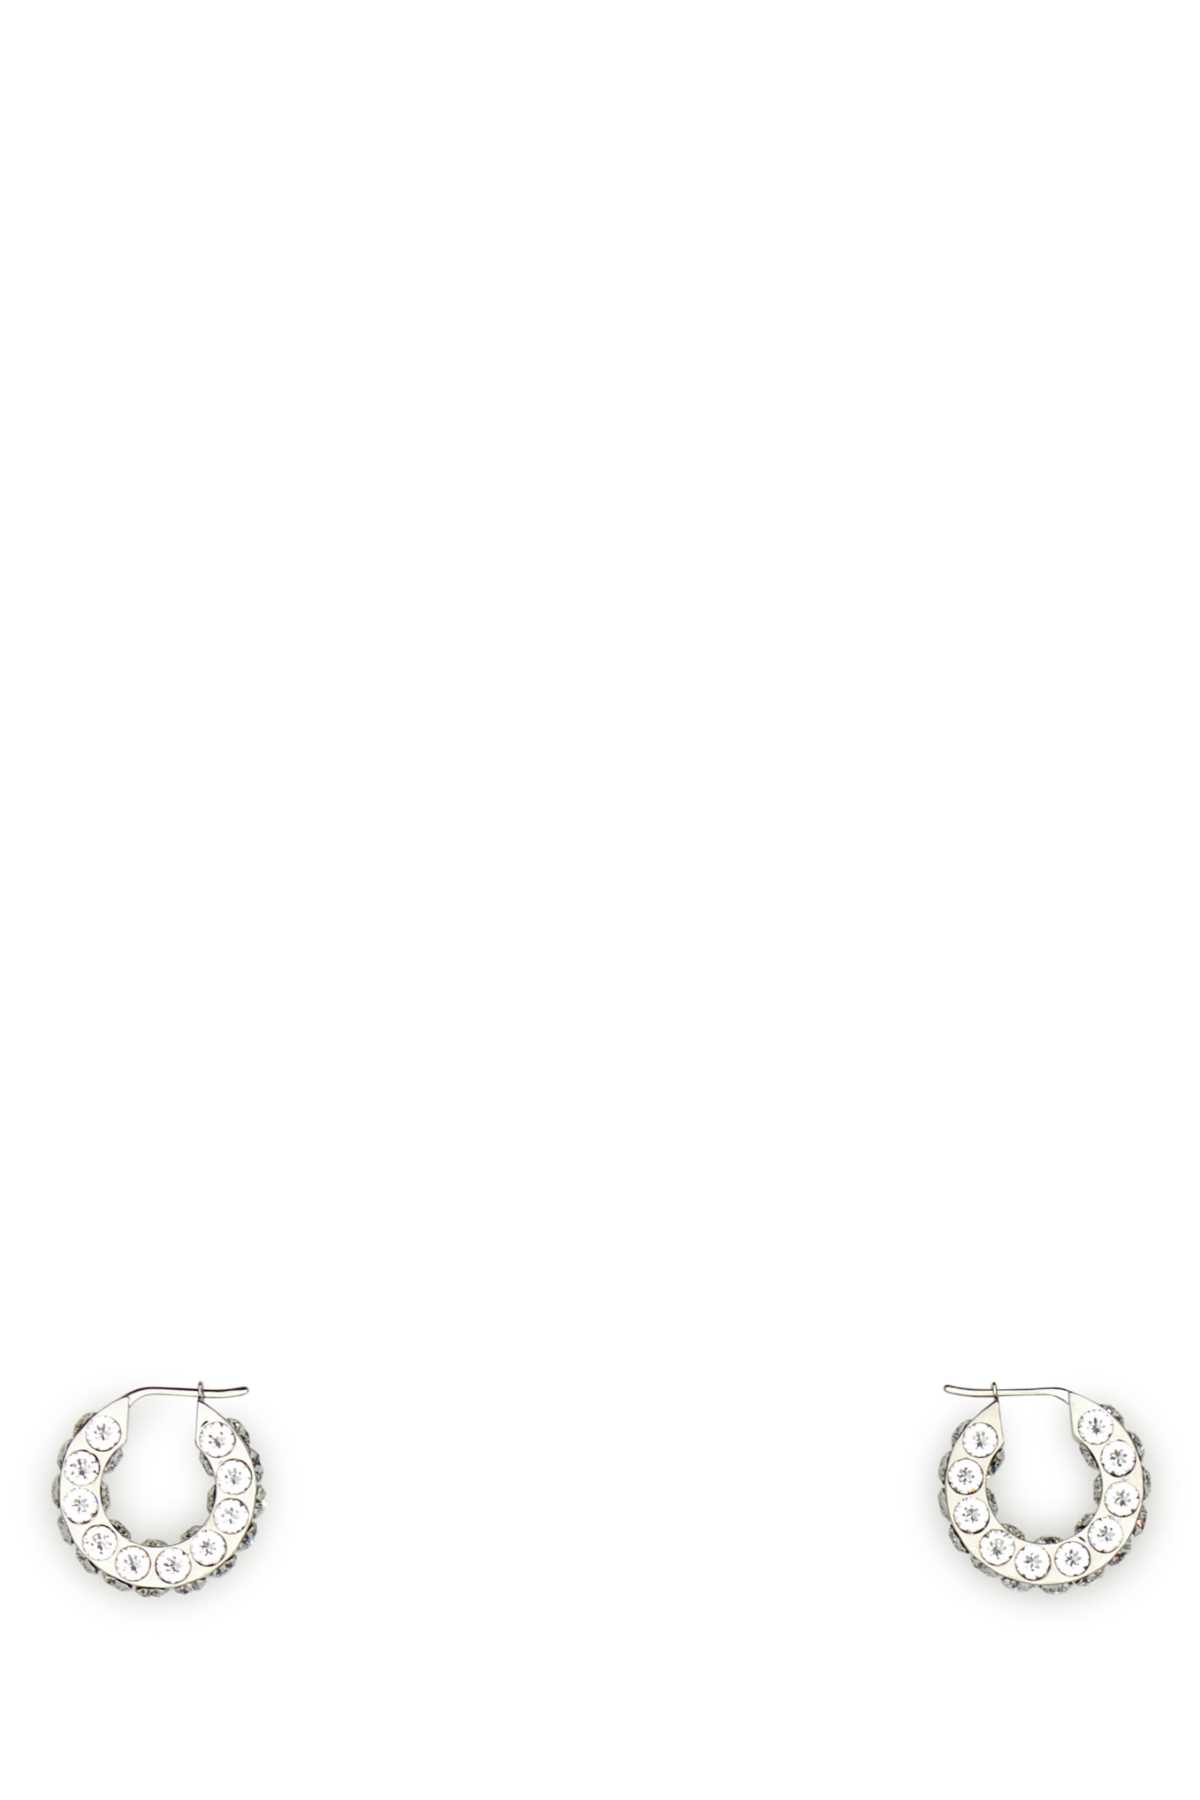 Amina Muaddi Embellished Metal Small Jahleel Earrings